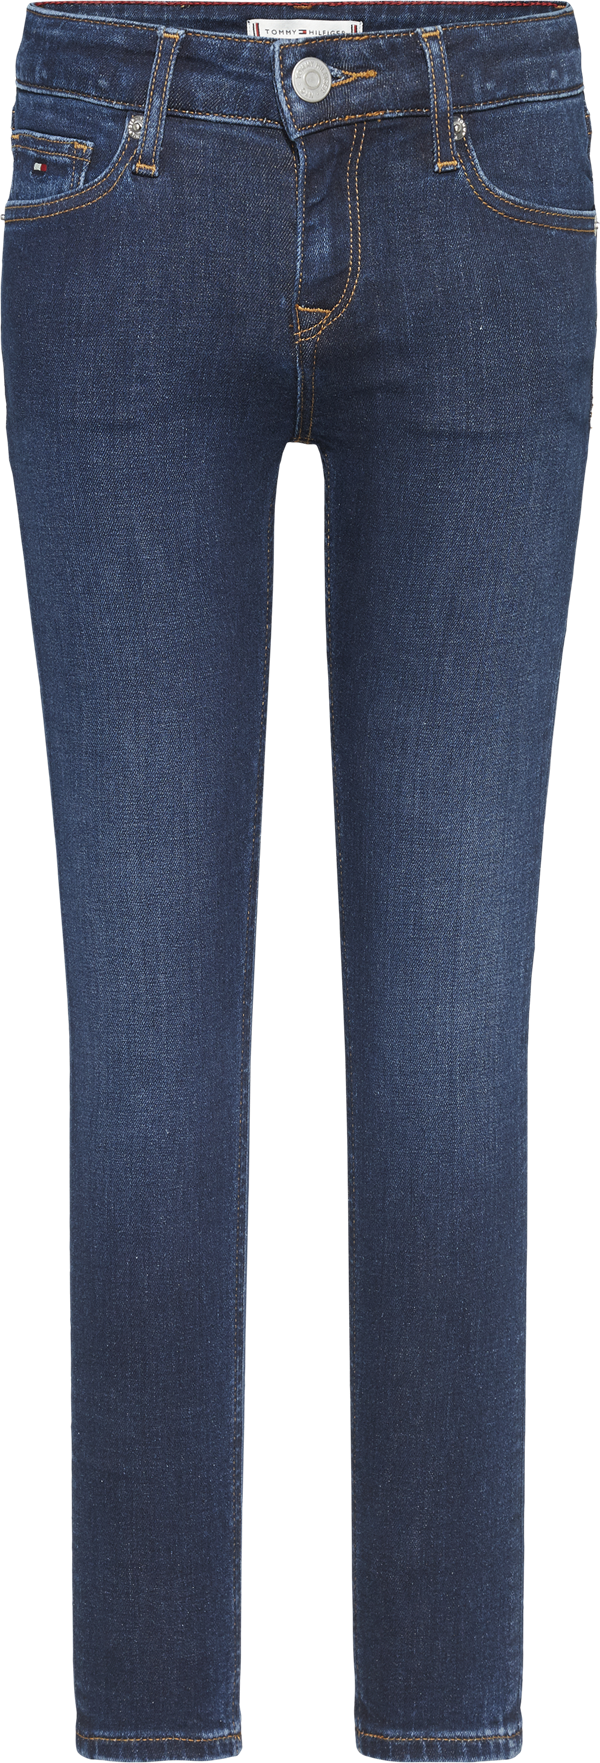 Tommy Hilfiger skinny jeans - blå denim